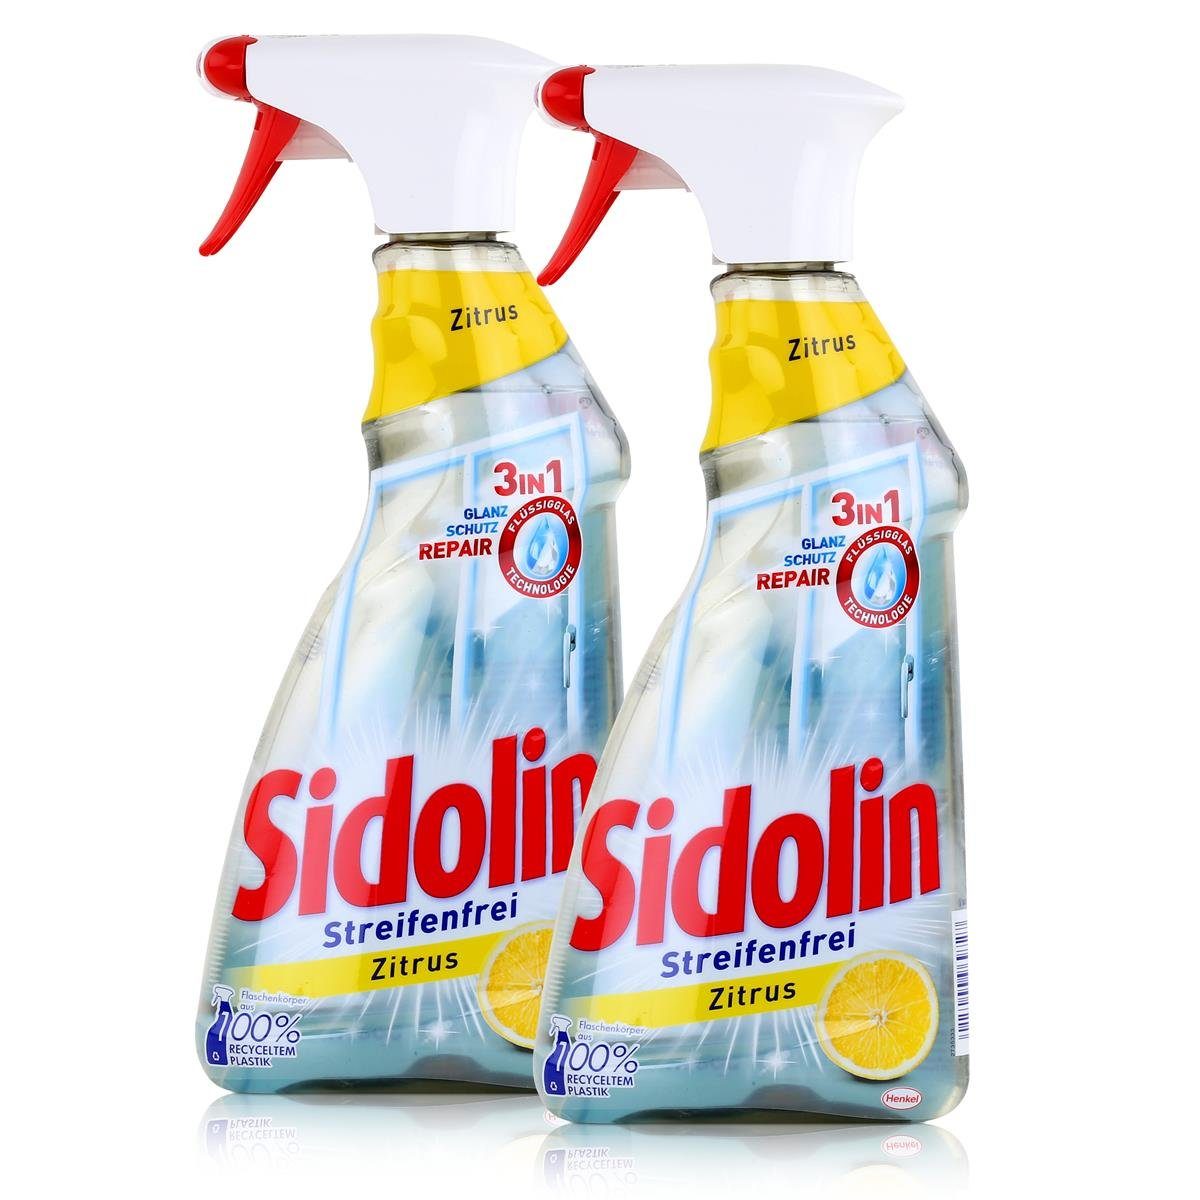 SIDOLIN Sidolin Streifenfrei Zitrus 500ml - Glasreiniger, Fensterreiniger (2er Glasreiniger